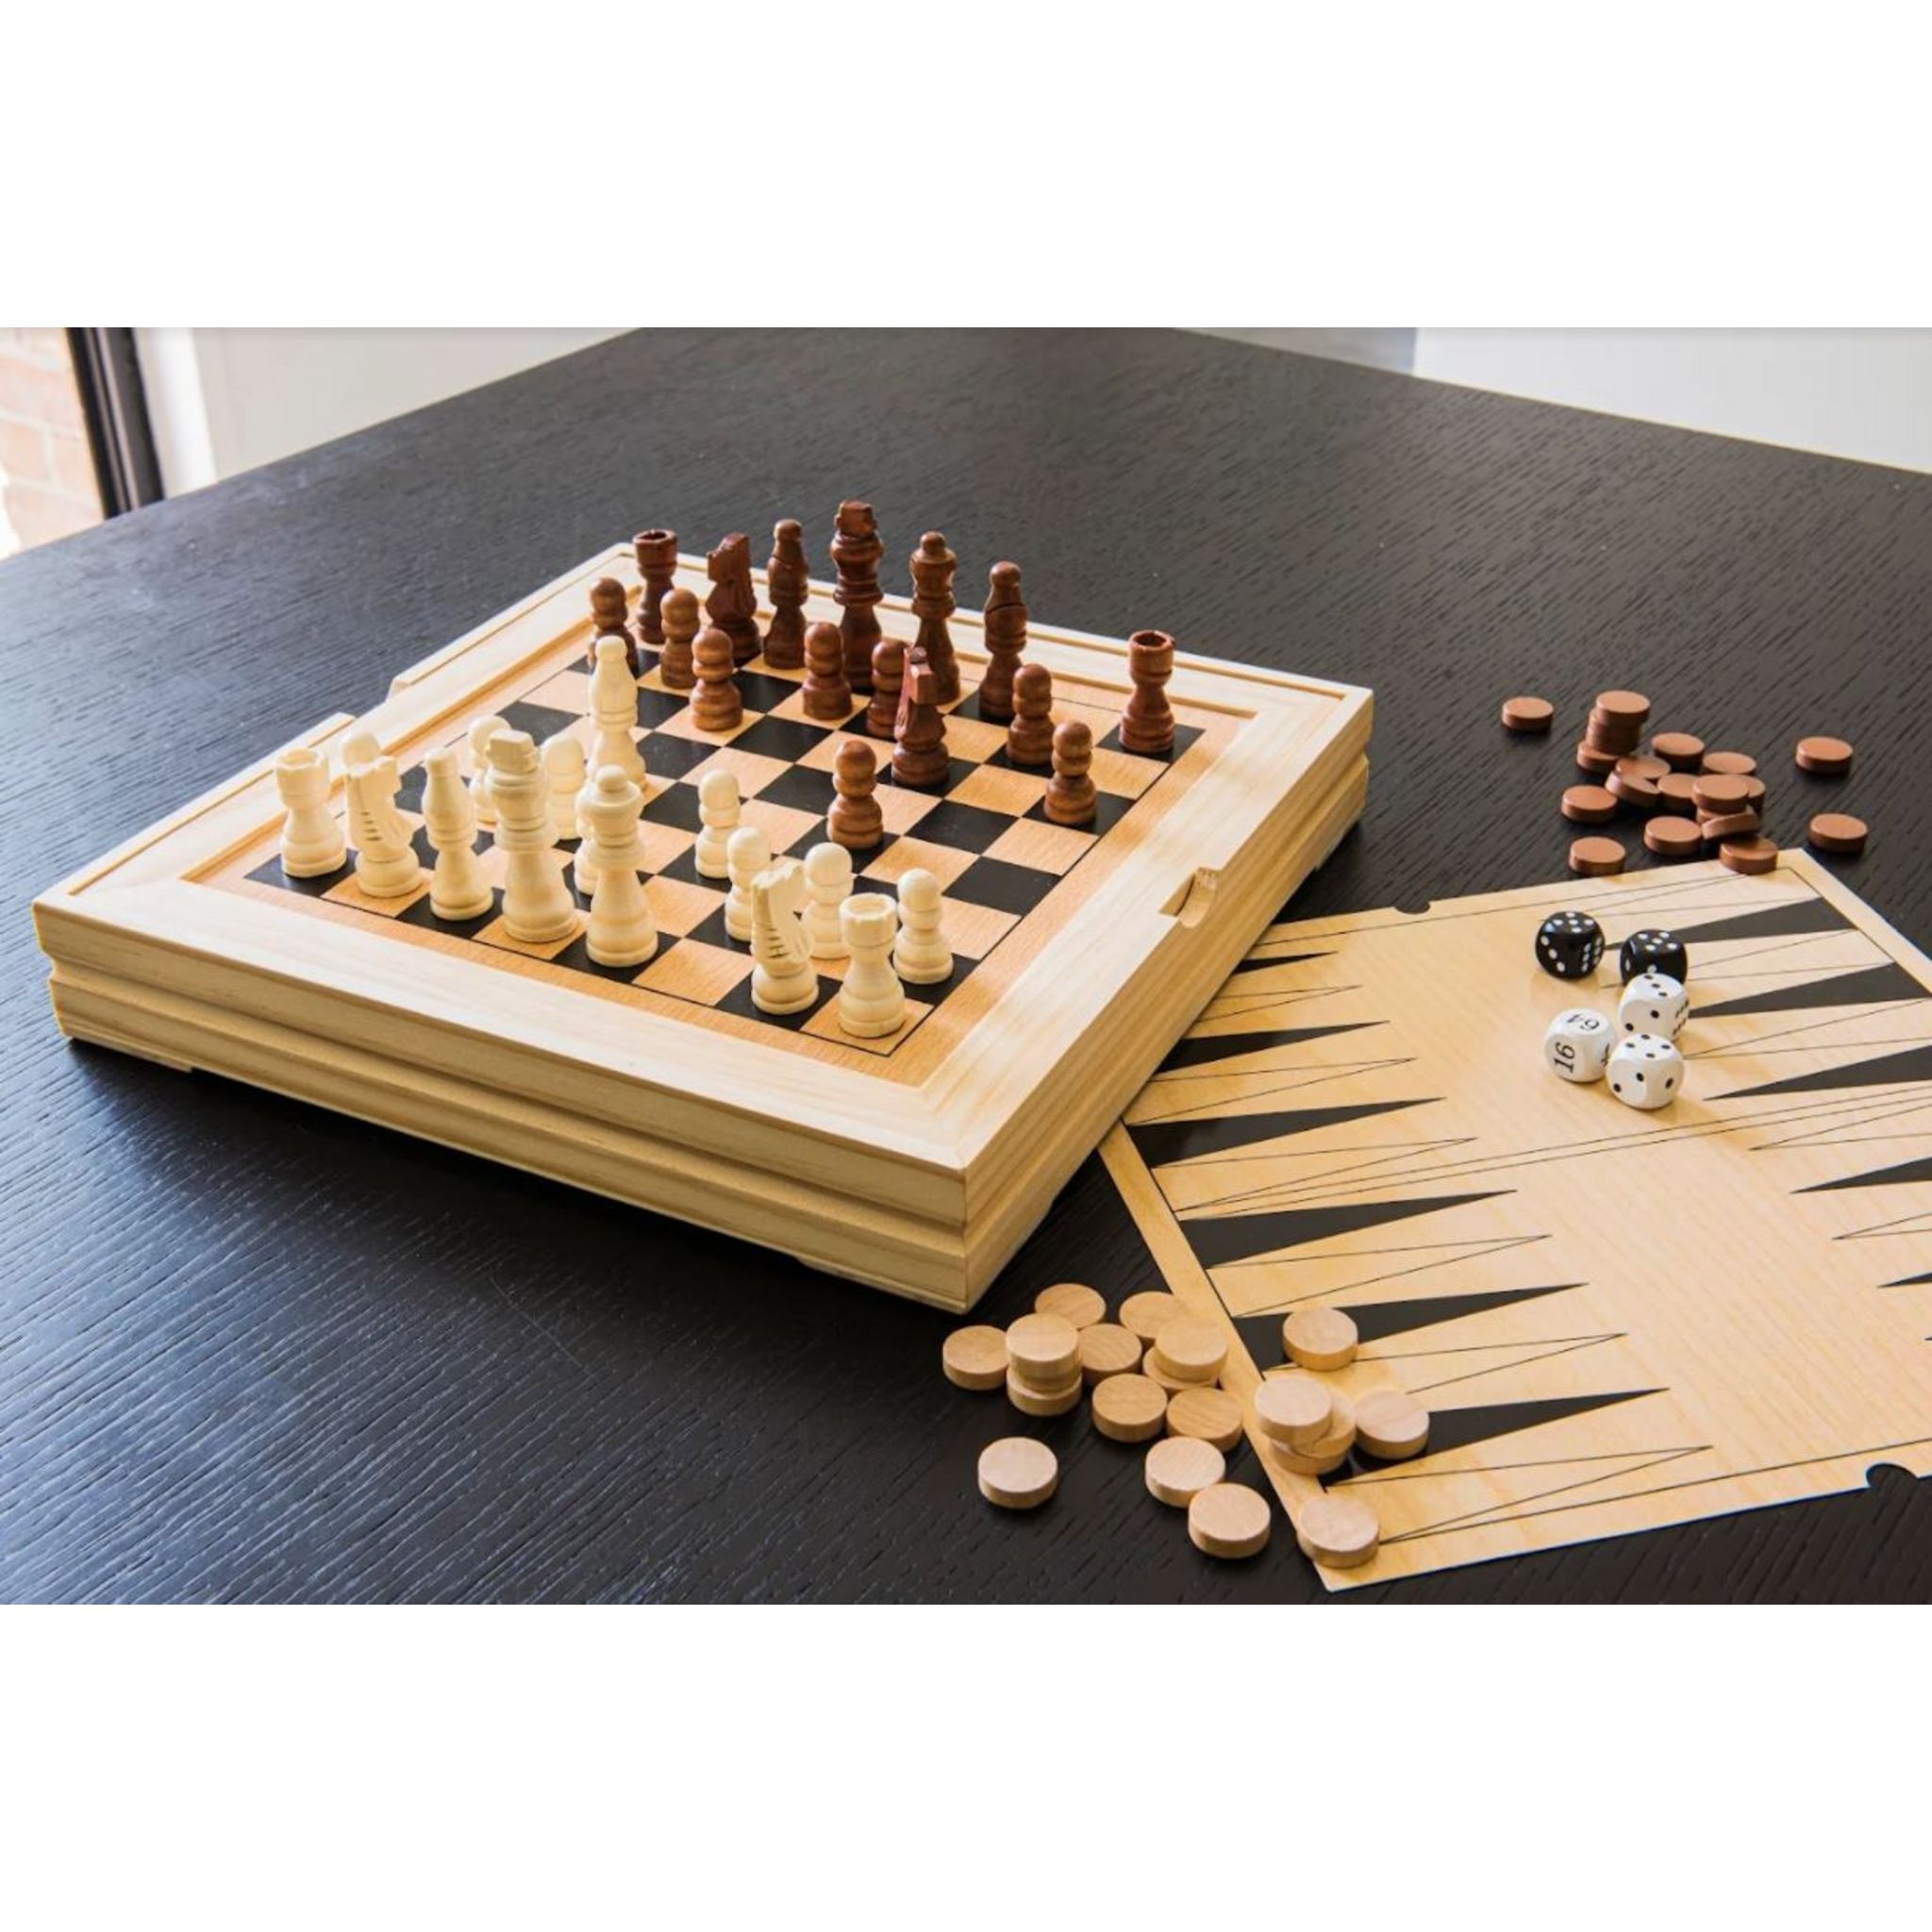 3 en 1 en bois jeu de plateau SET Compendium VOYAGE Jeux d'échecs Jeu De Dames Backgammon 